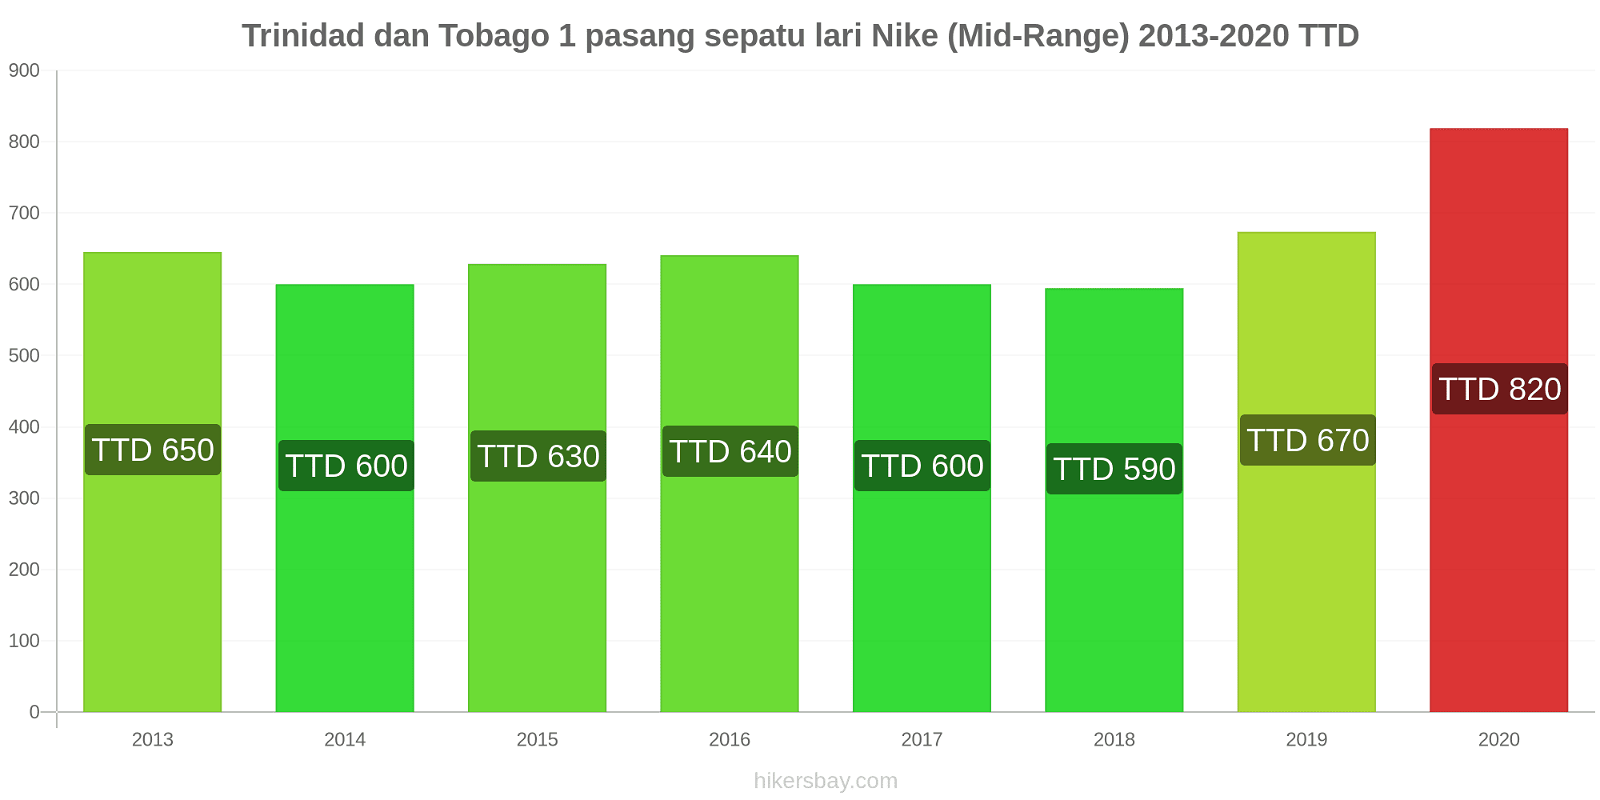 Trinidad dan Tobago perubahan harga 1 pasang sepatu lari Nike (Mid-Range) hikersbay.com